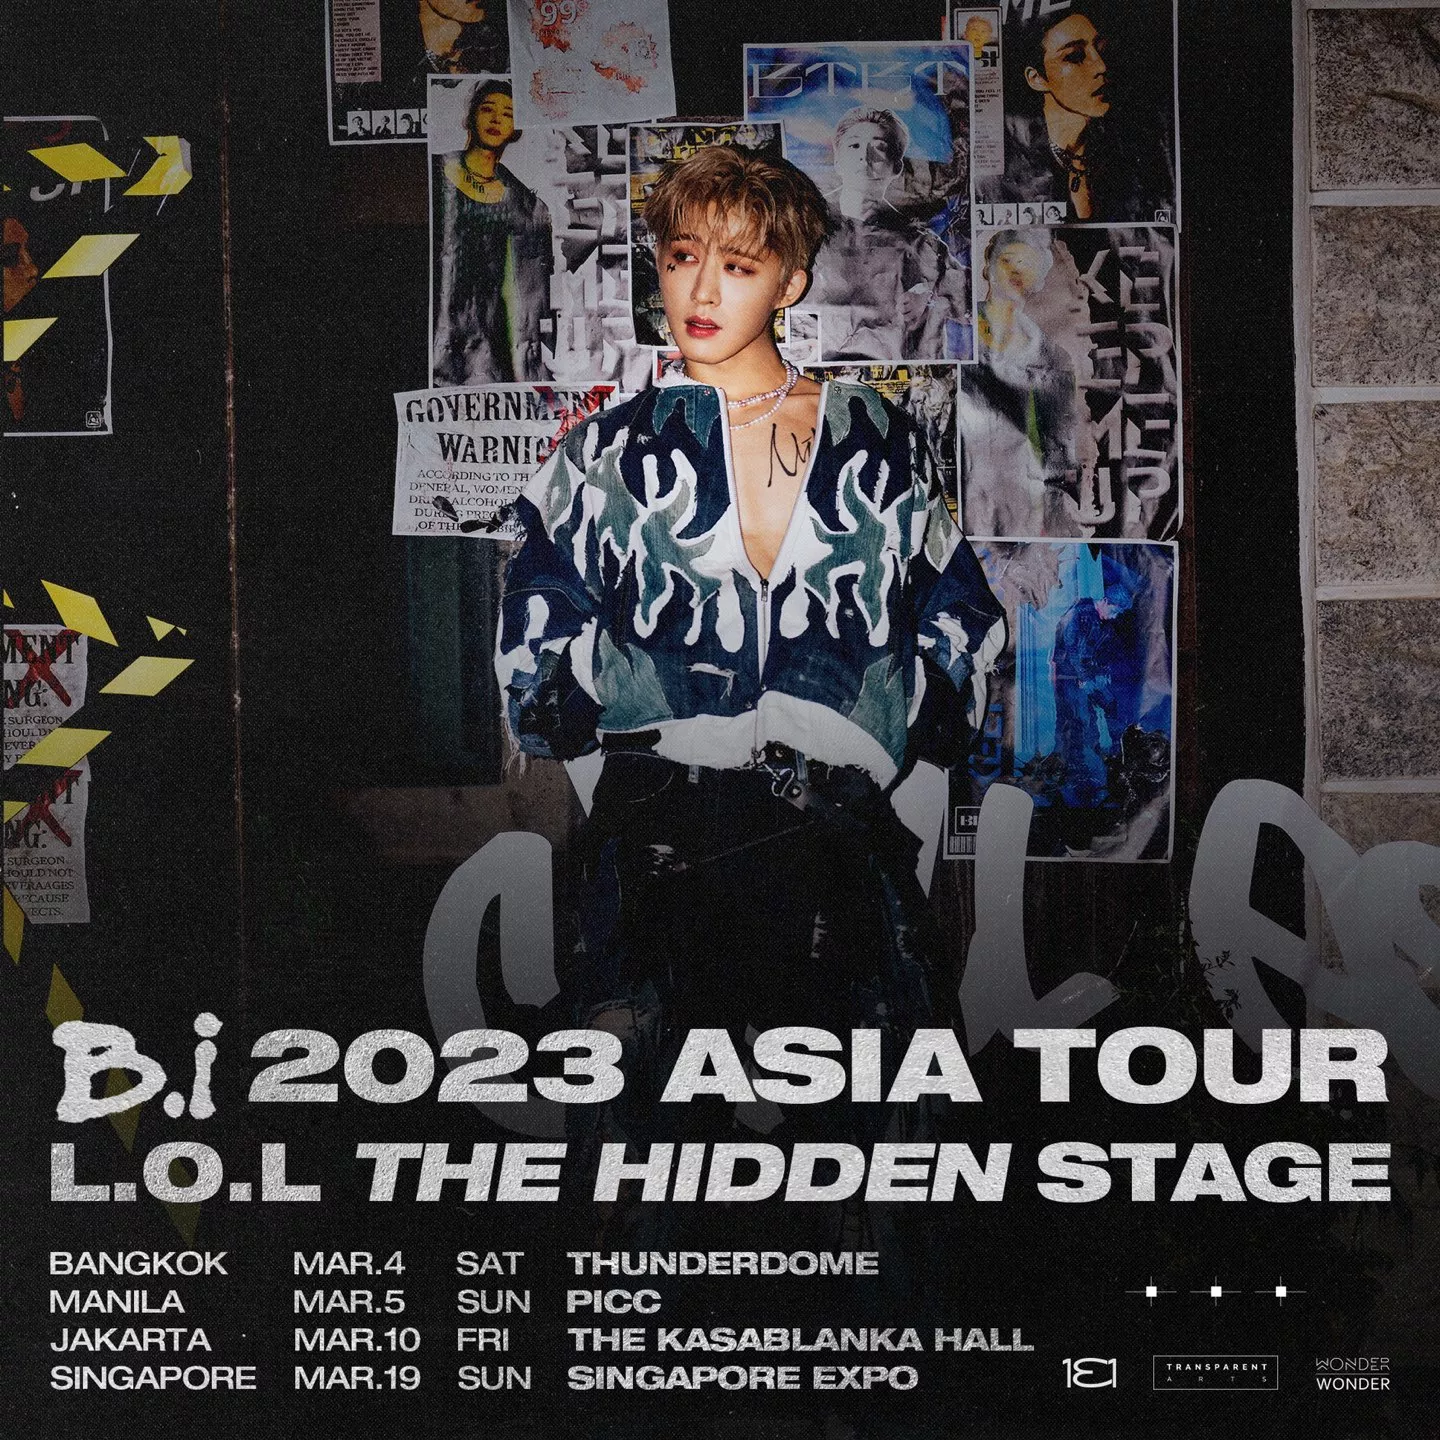 B.I проведет в 2023 году тур по Азии "'L.O.L THE HIDDEN STAGE" в четырех городах